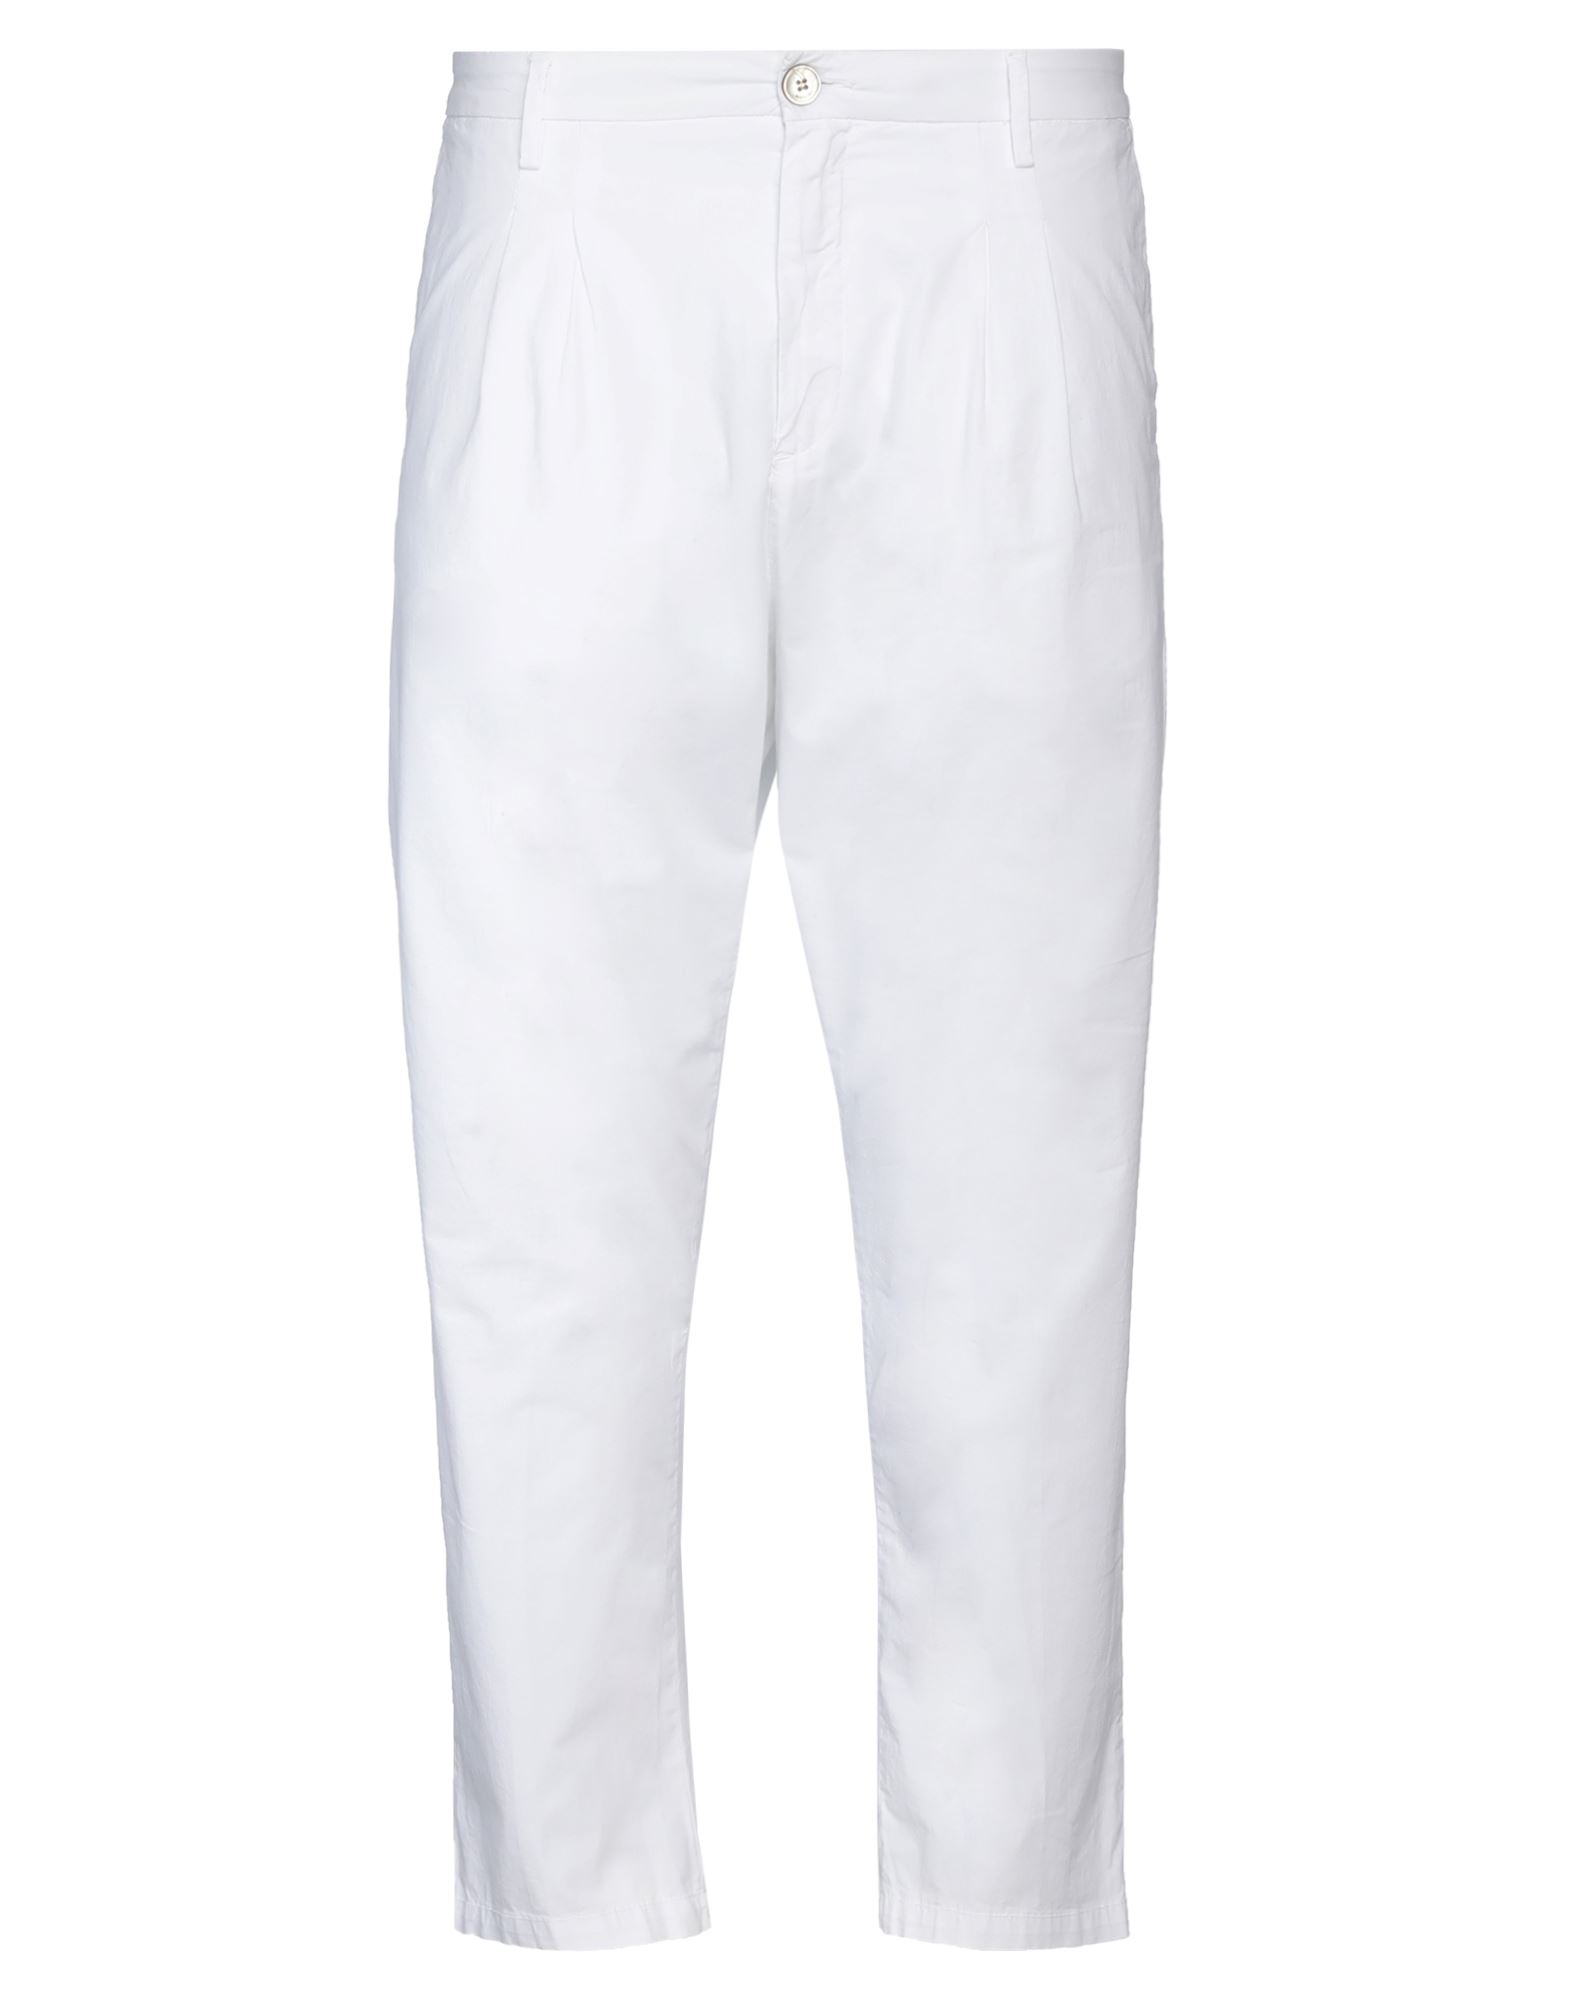 Shop Aglini Man Pants White Size 30 Cotton, Elastane